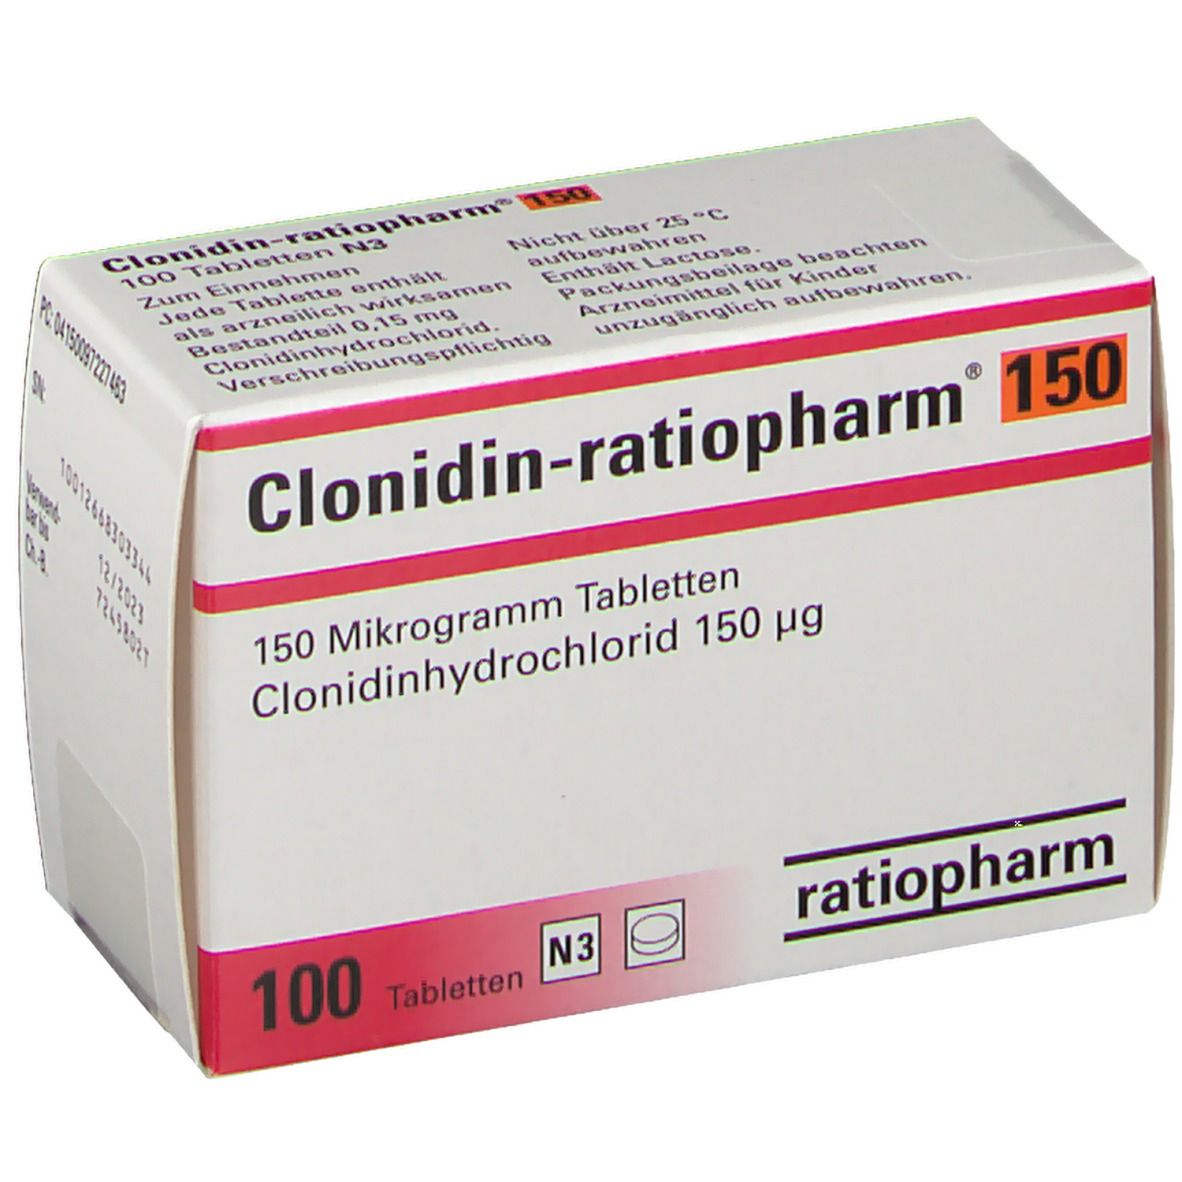 Clonidin-ratiopharm® 150